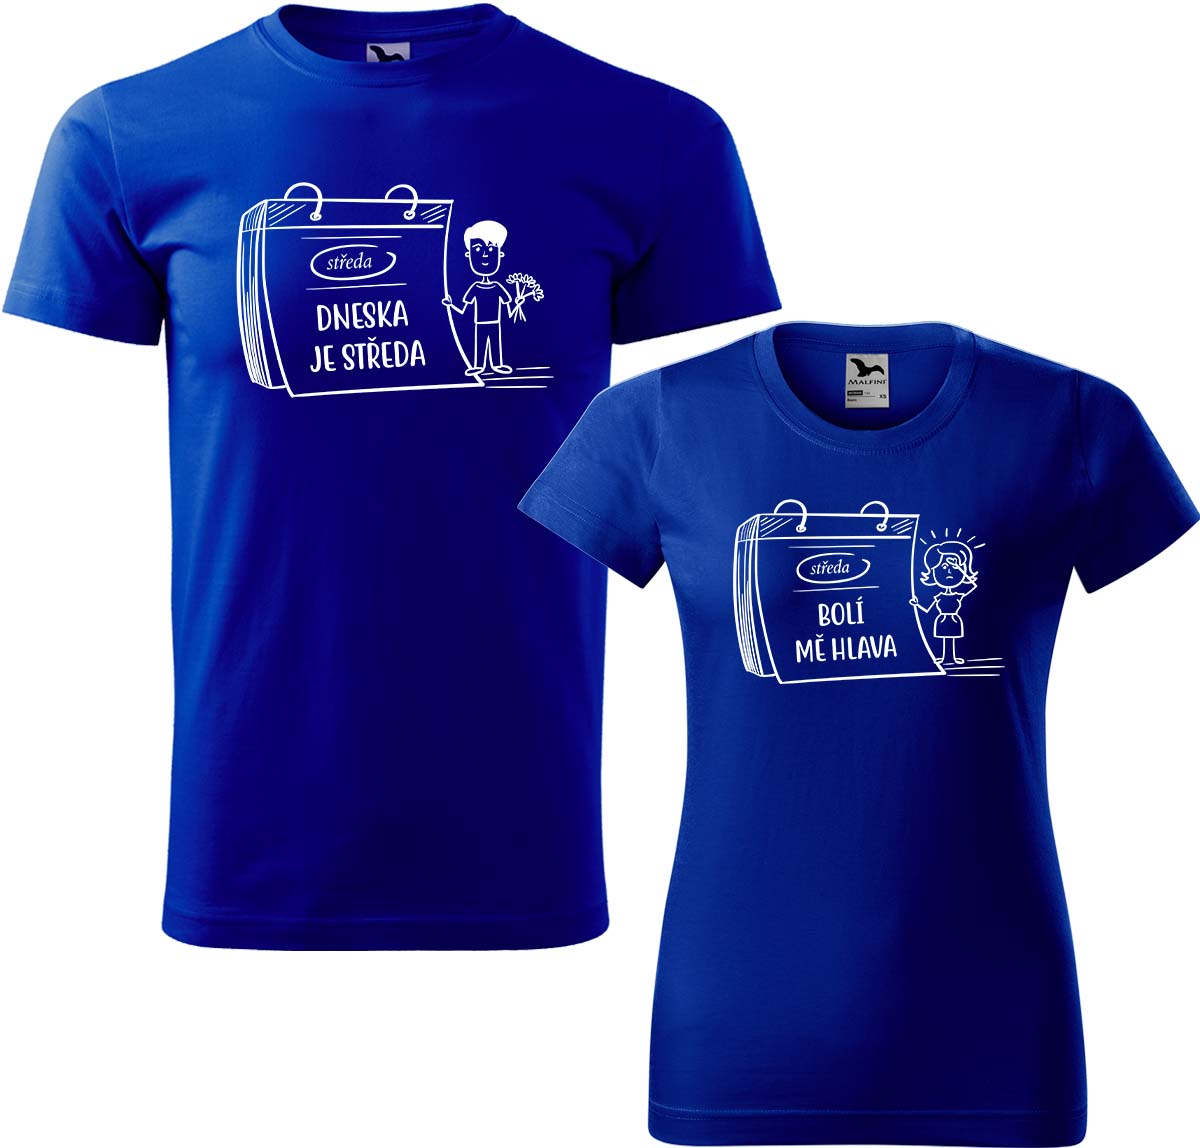 Trička pro páry - Dneska je středa Barva: Královská modrá (05), Velikost dámské tričko: S, Velikost pánské tričko: XL